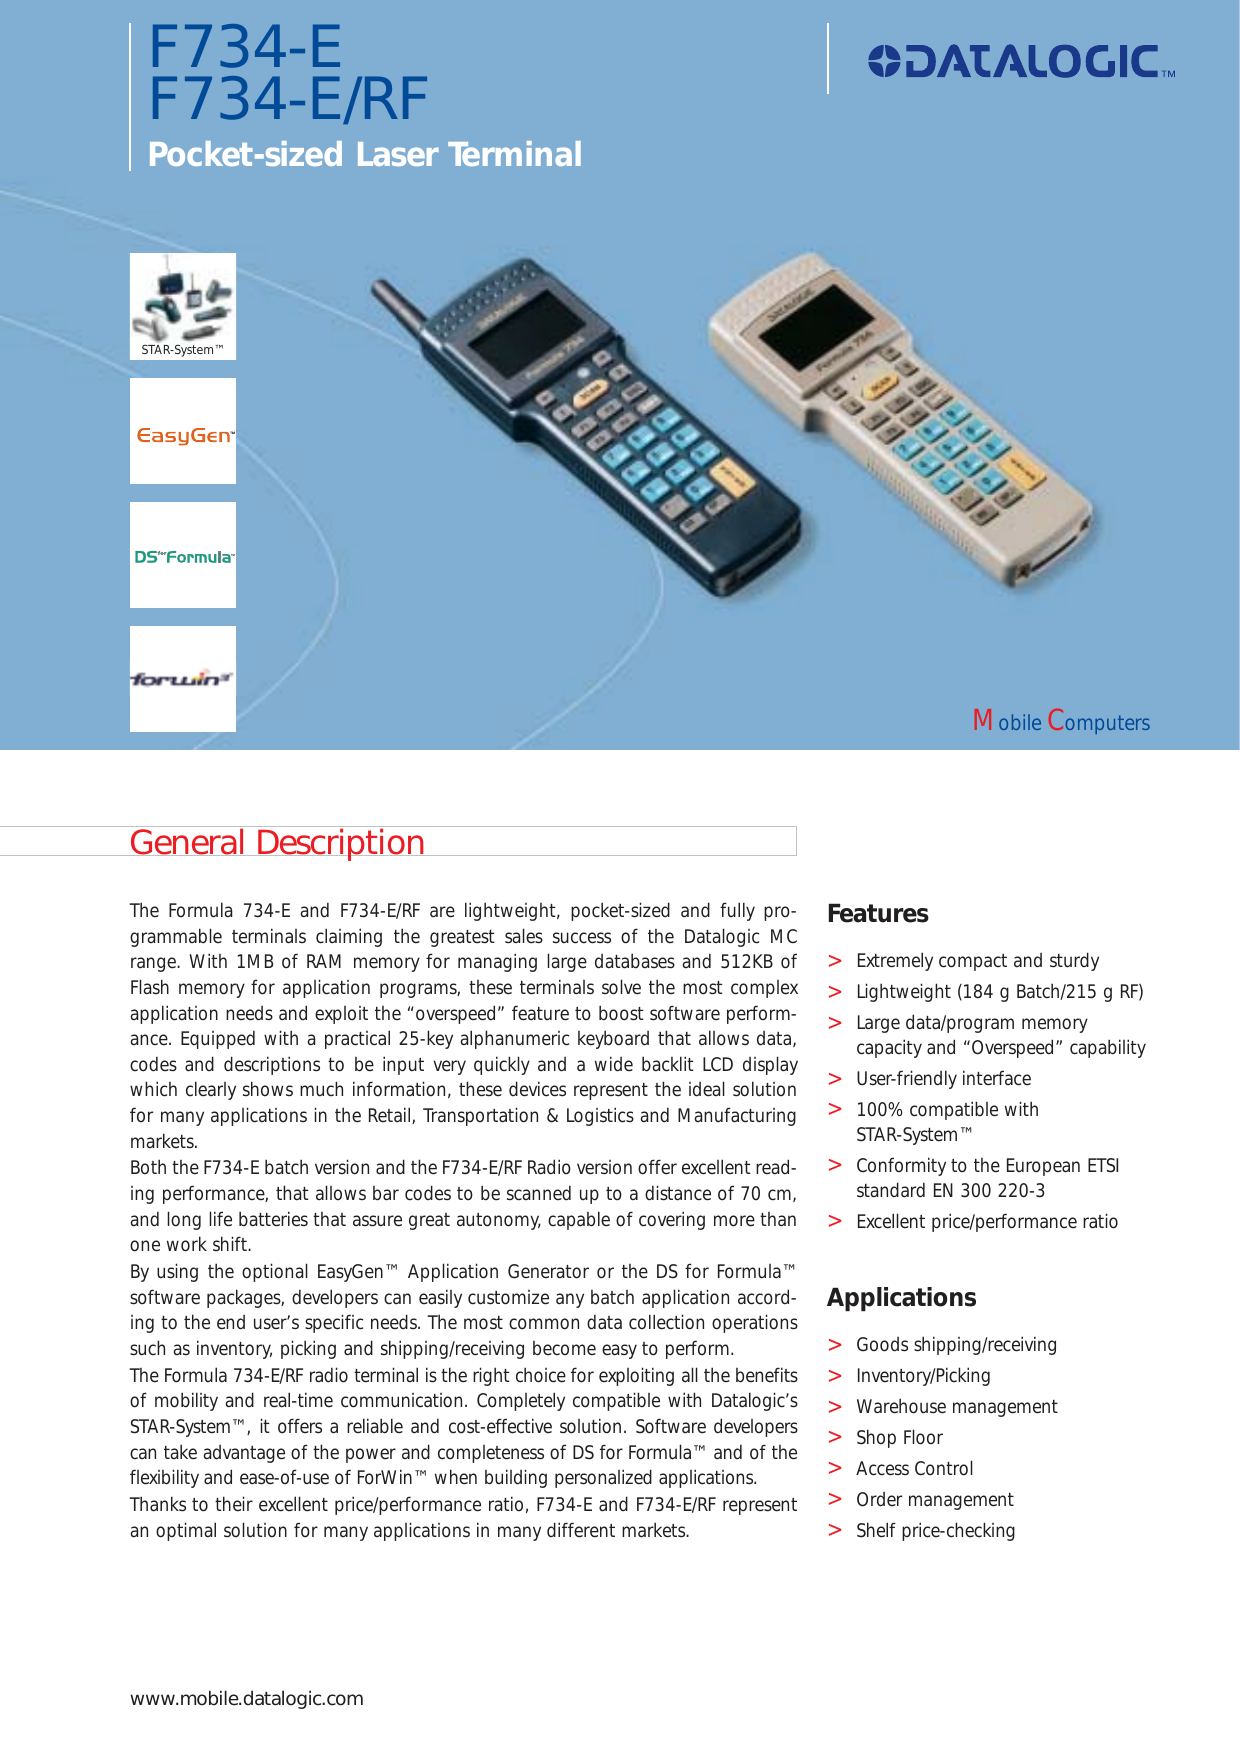 Datalogic Scanning Pocket Sized Laser Terminal F734 E Rf Users